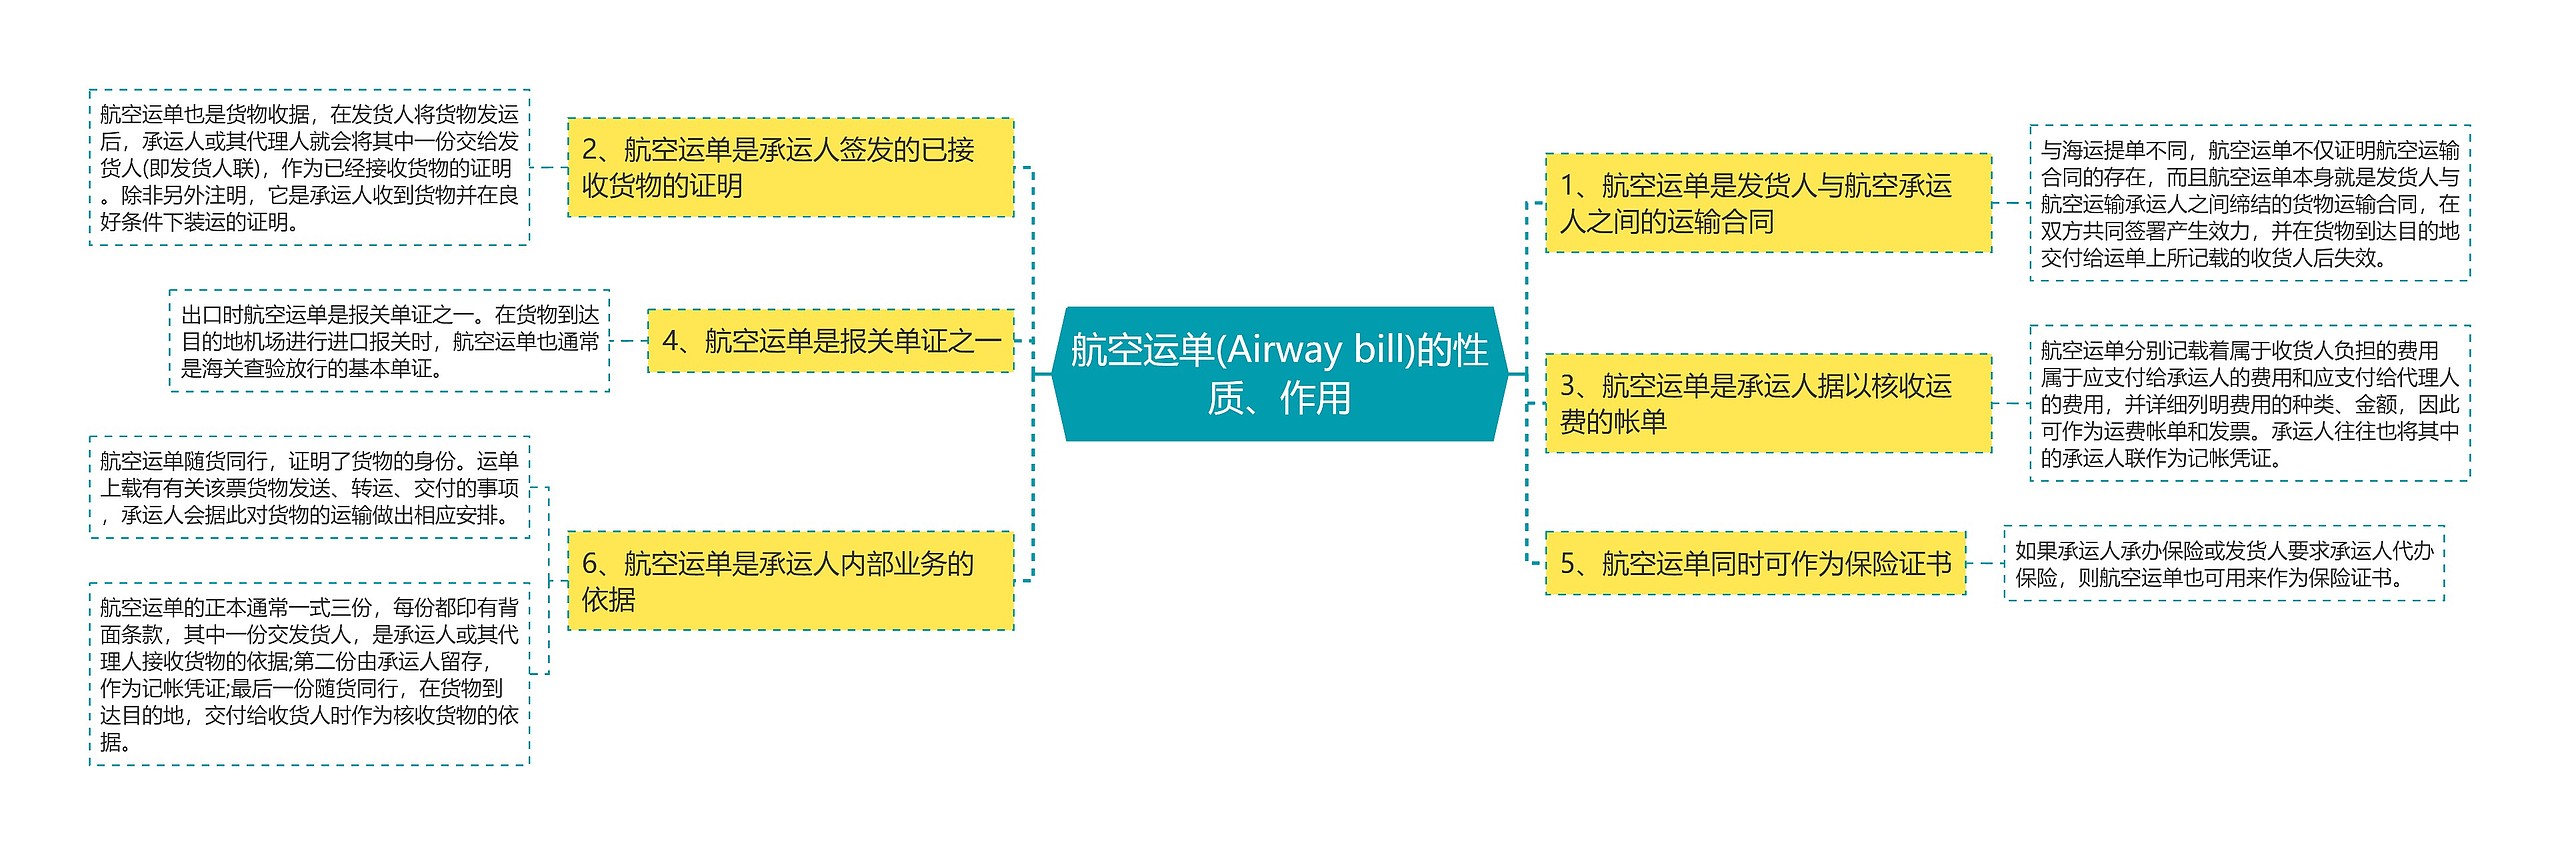 航空运单(Airway bill)的性质、作用